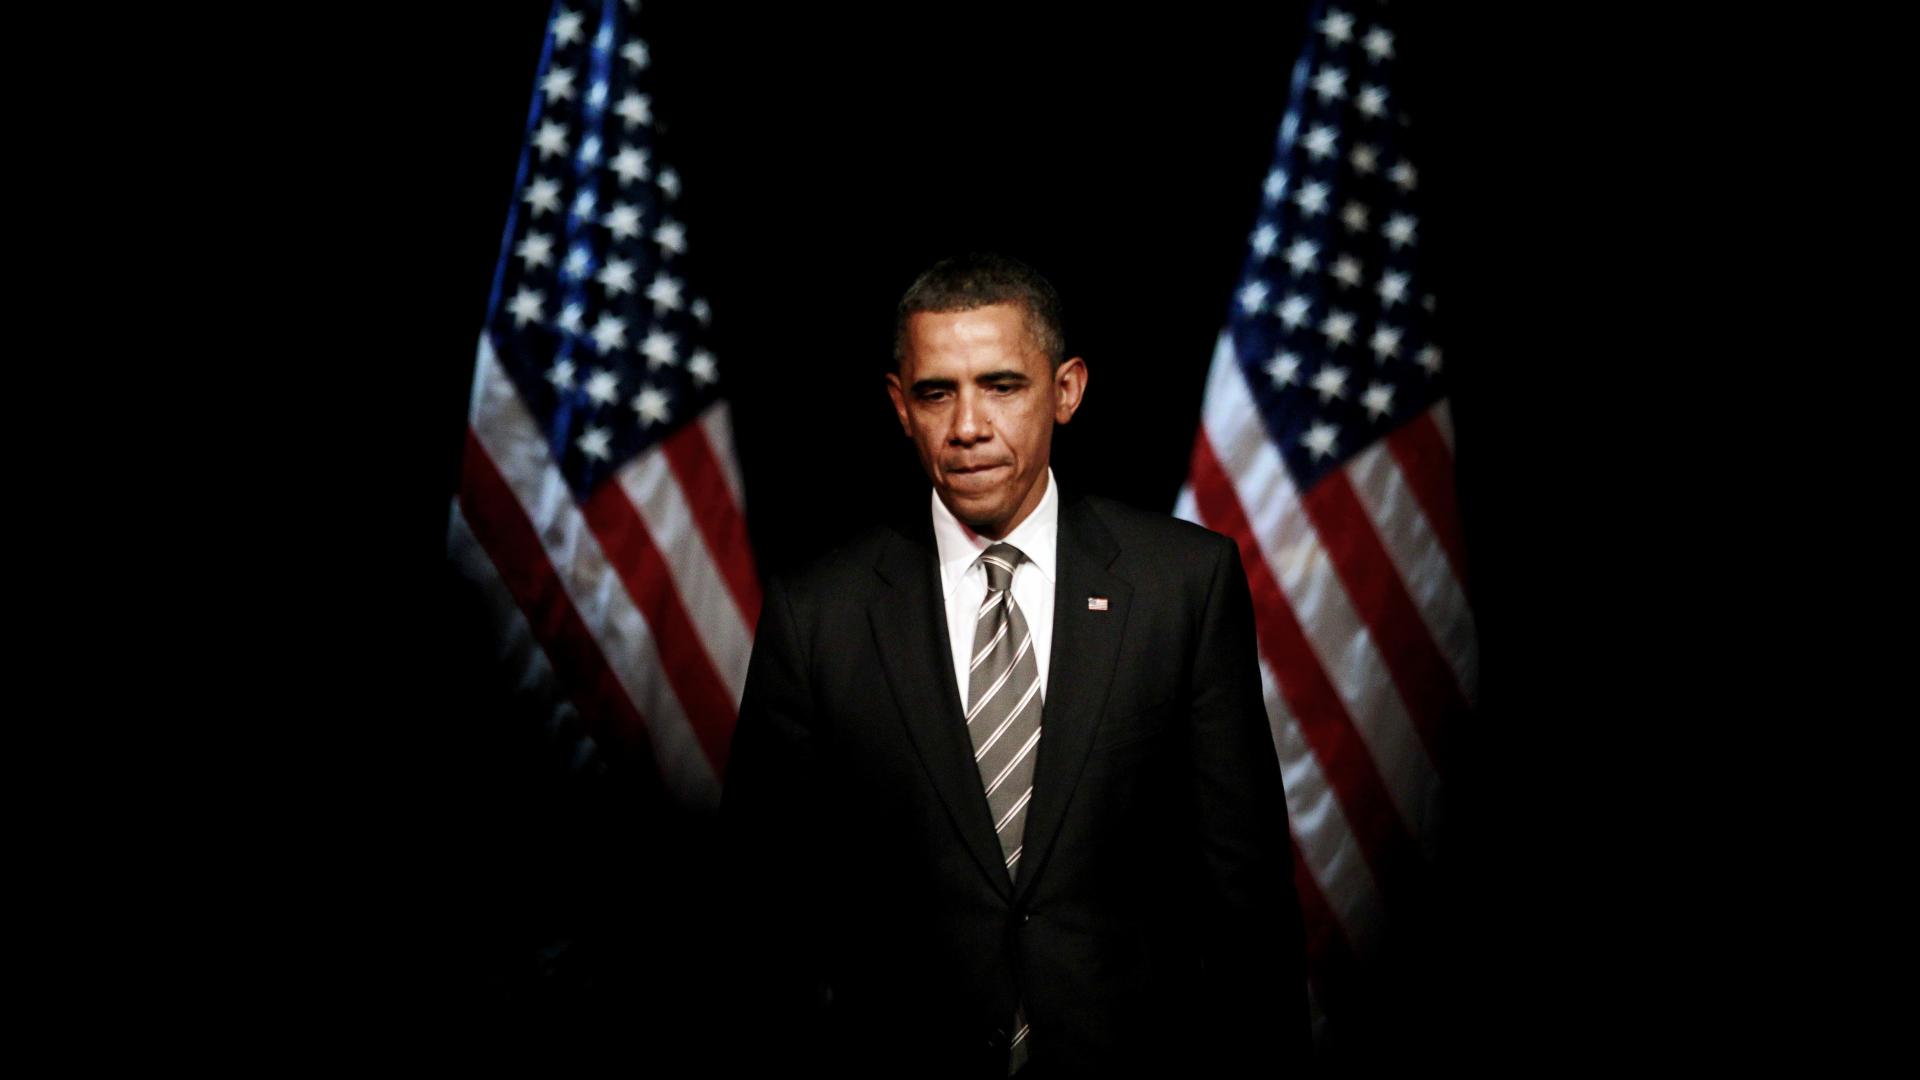 Barack Obama Wallpaper - WallpaperSafari